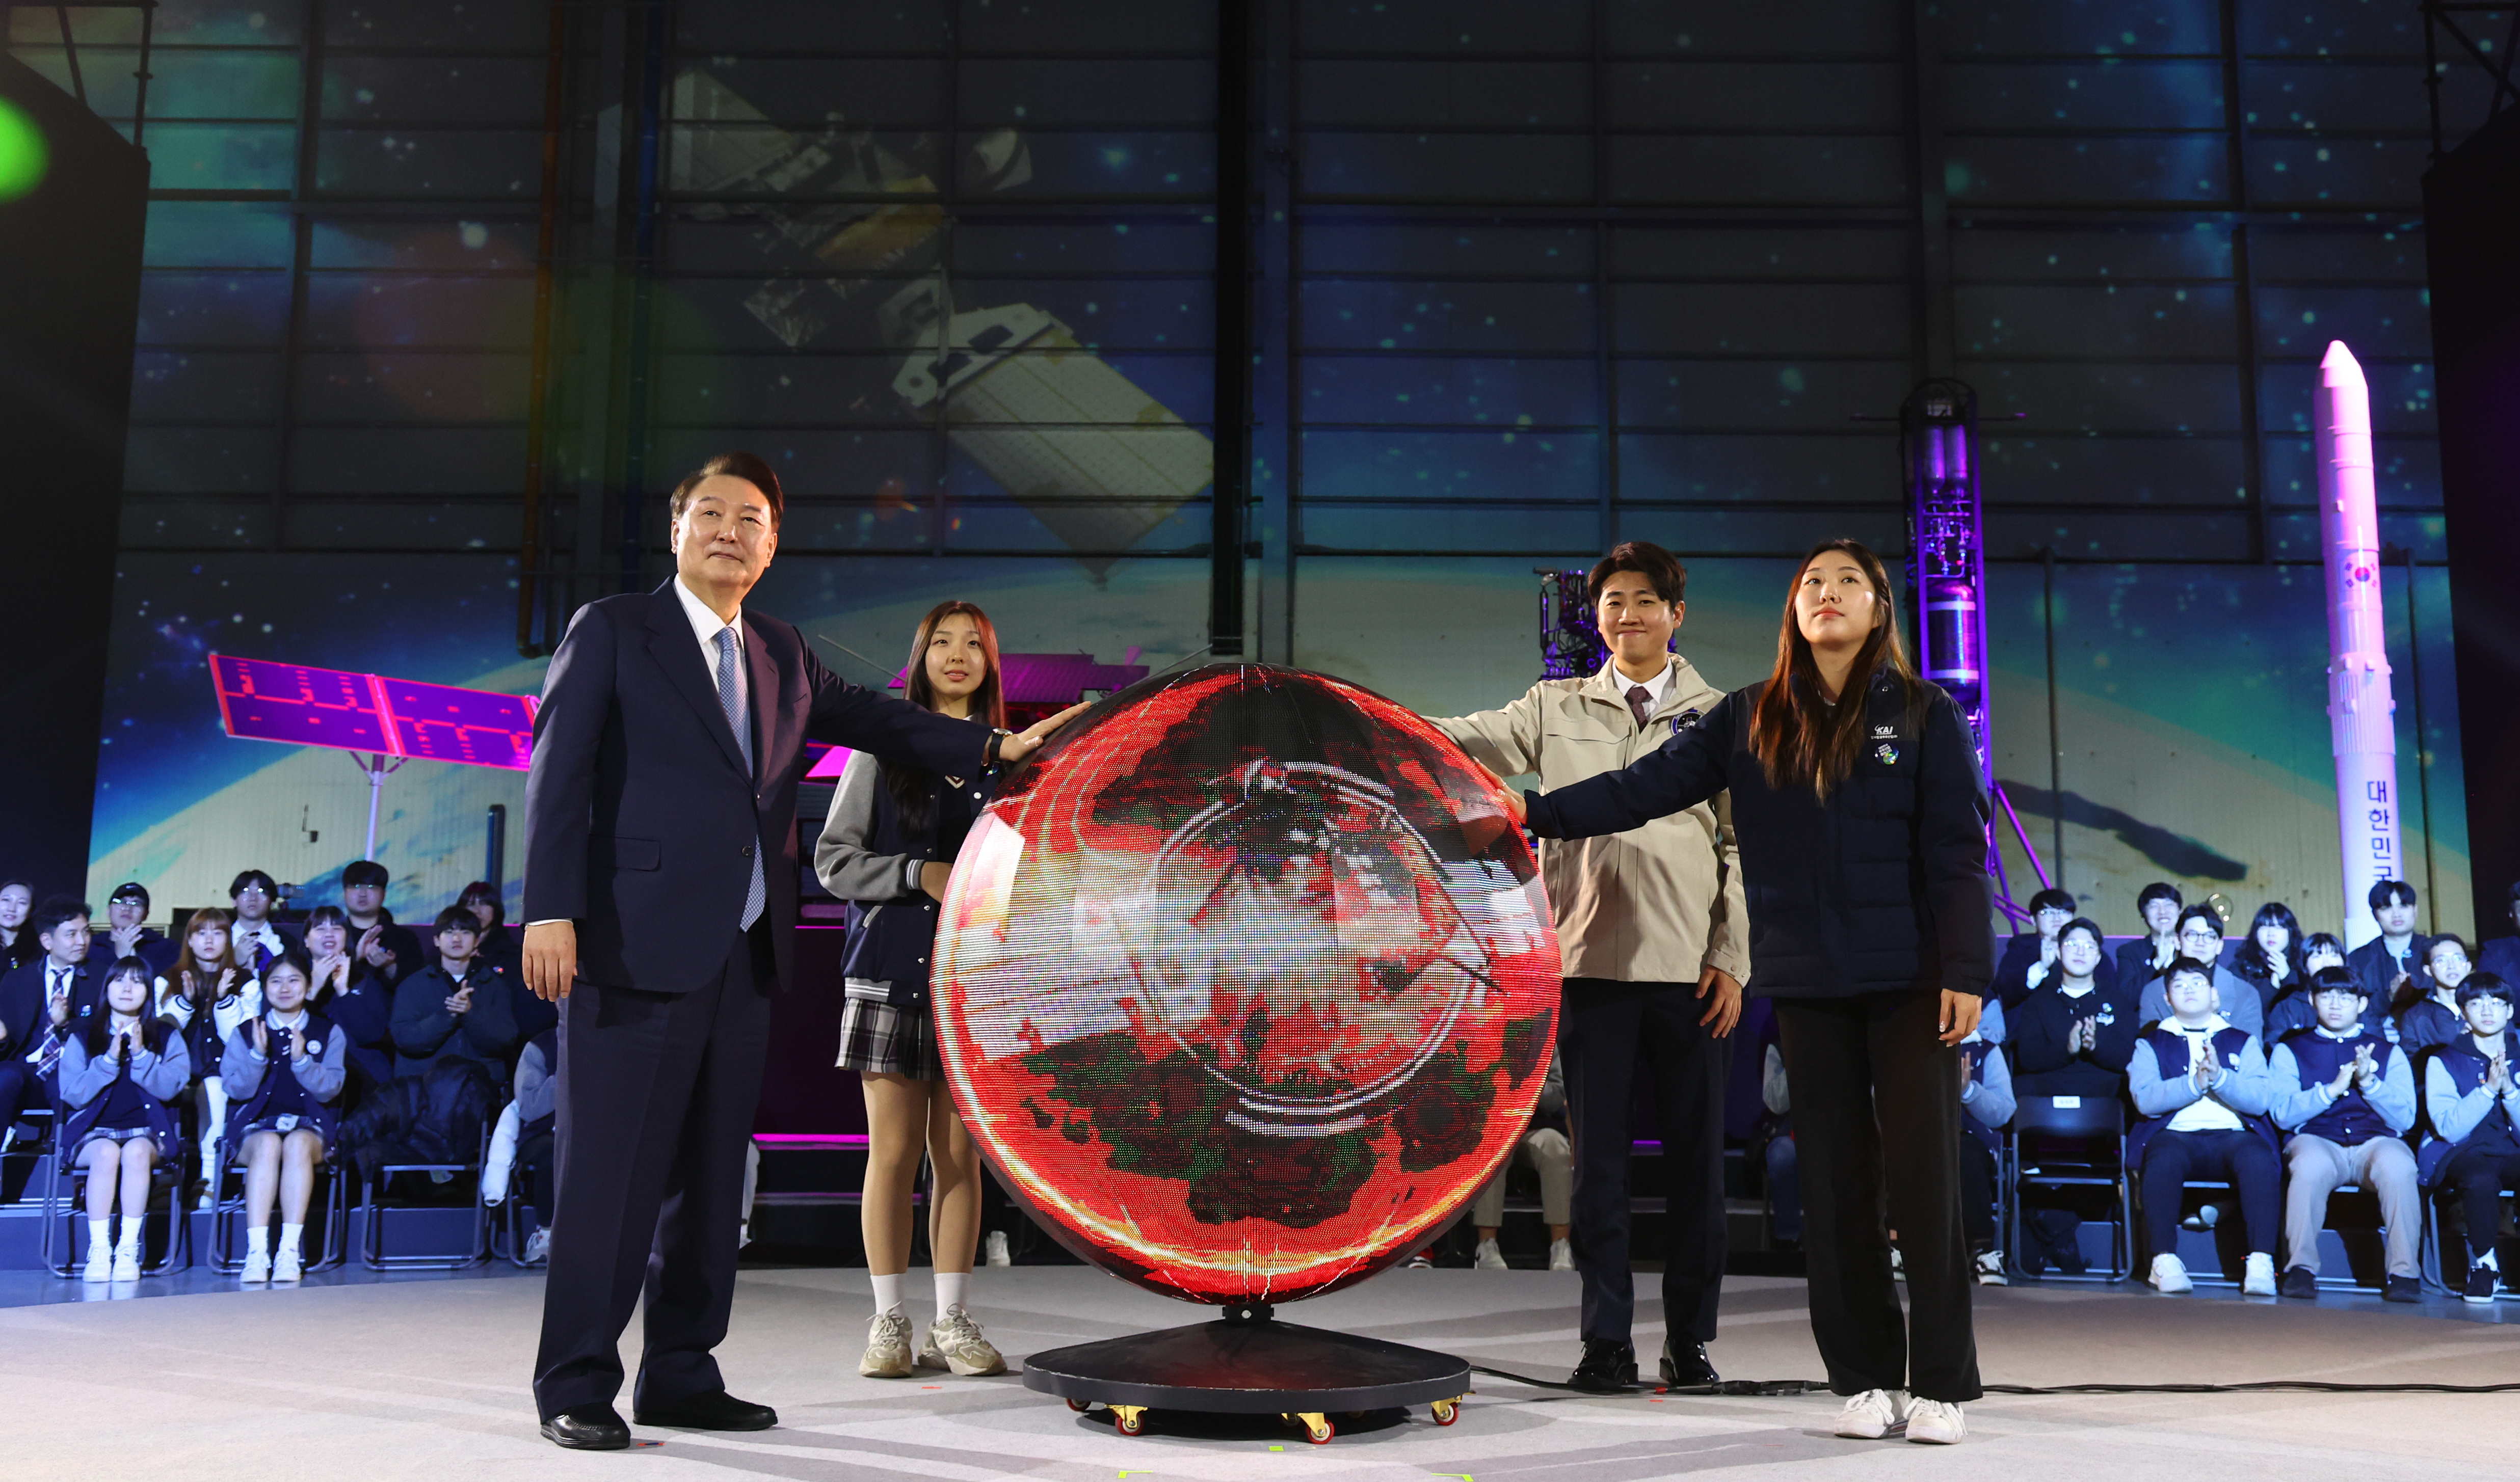 Президент РК Юн Сок Ёль 13 марта выступает на мероприятии, посвященном запуску Корейского кластера космической промышленности, которое состоялось в штаб-квартире Корейской аэрокосмической корпорации в Сачхоне, провинция Кёнсан-Намдо. В этот день глава страны пообещал расширить бюджет развития космоса до более чем 1,5 трлн вон к 2027 году. Корея успешно вывела на орбиту первый в стране лунный зонд «Данури» в конце января 2022 года, а также осуществила запуск первой корейской ракеты-носителя «Нурихо» 25 мая прошлого года. 27 мая правительство планирует открыть Корейское космическое агентство в Сачхоне. / Фото: Рёнхап